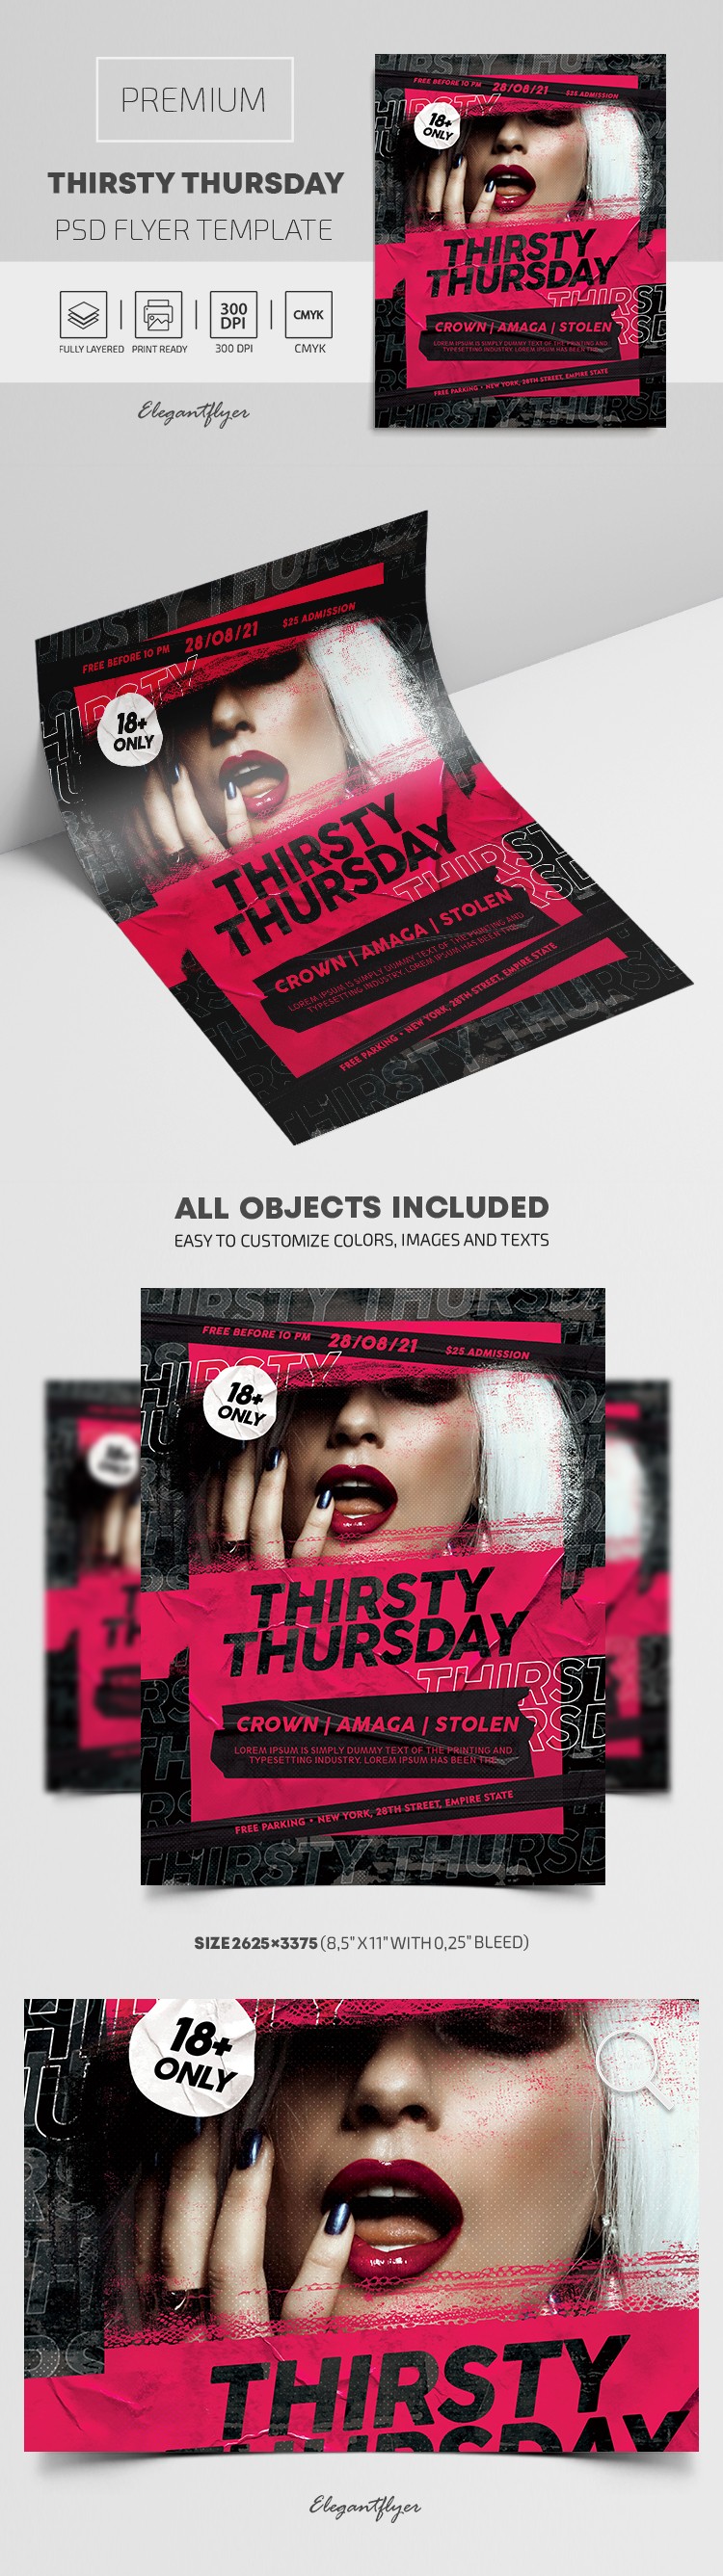 Thirsty Thursday Flyer by ElegantFlyer